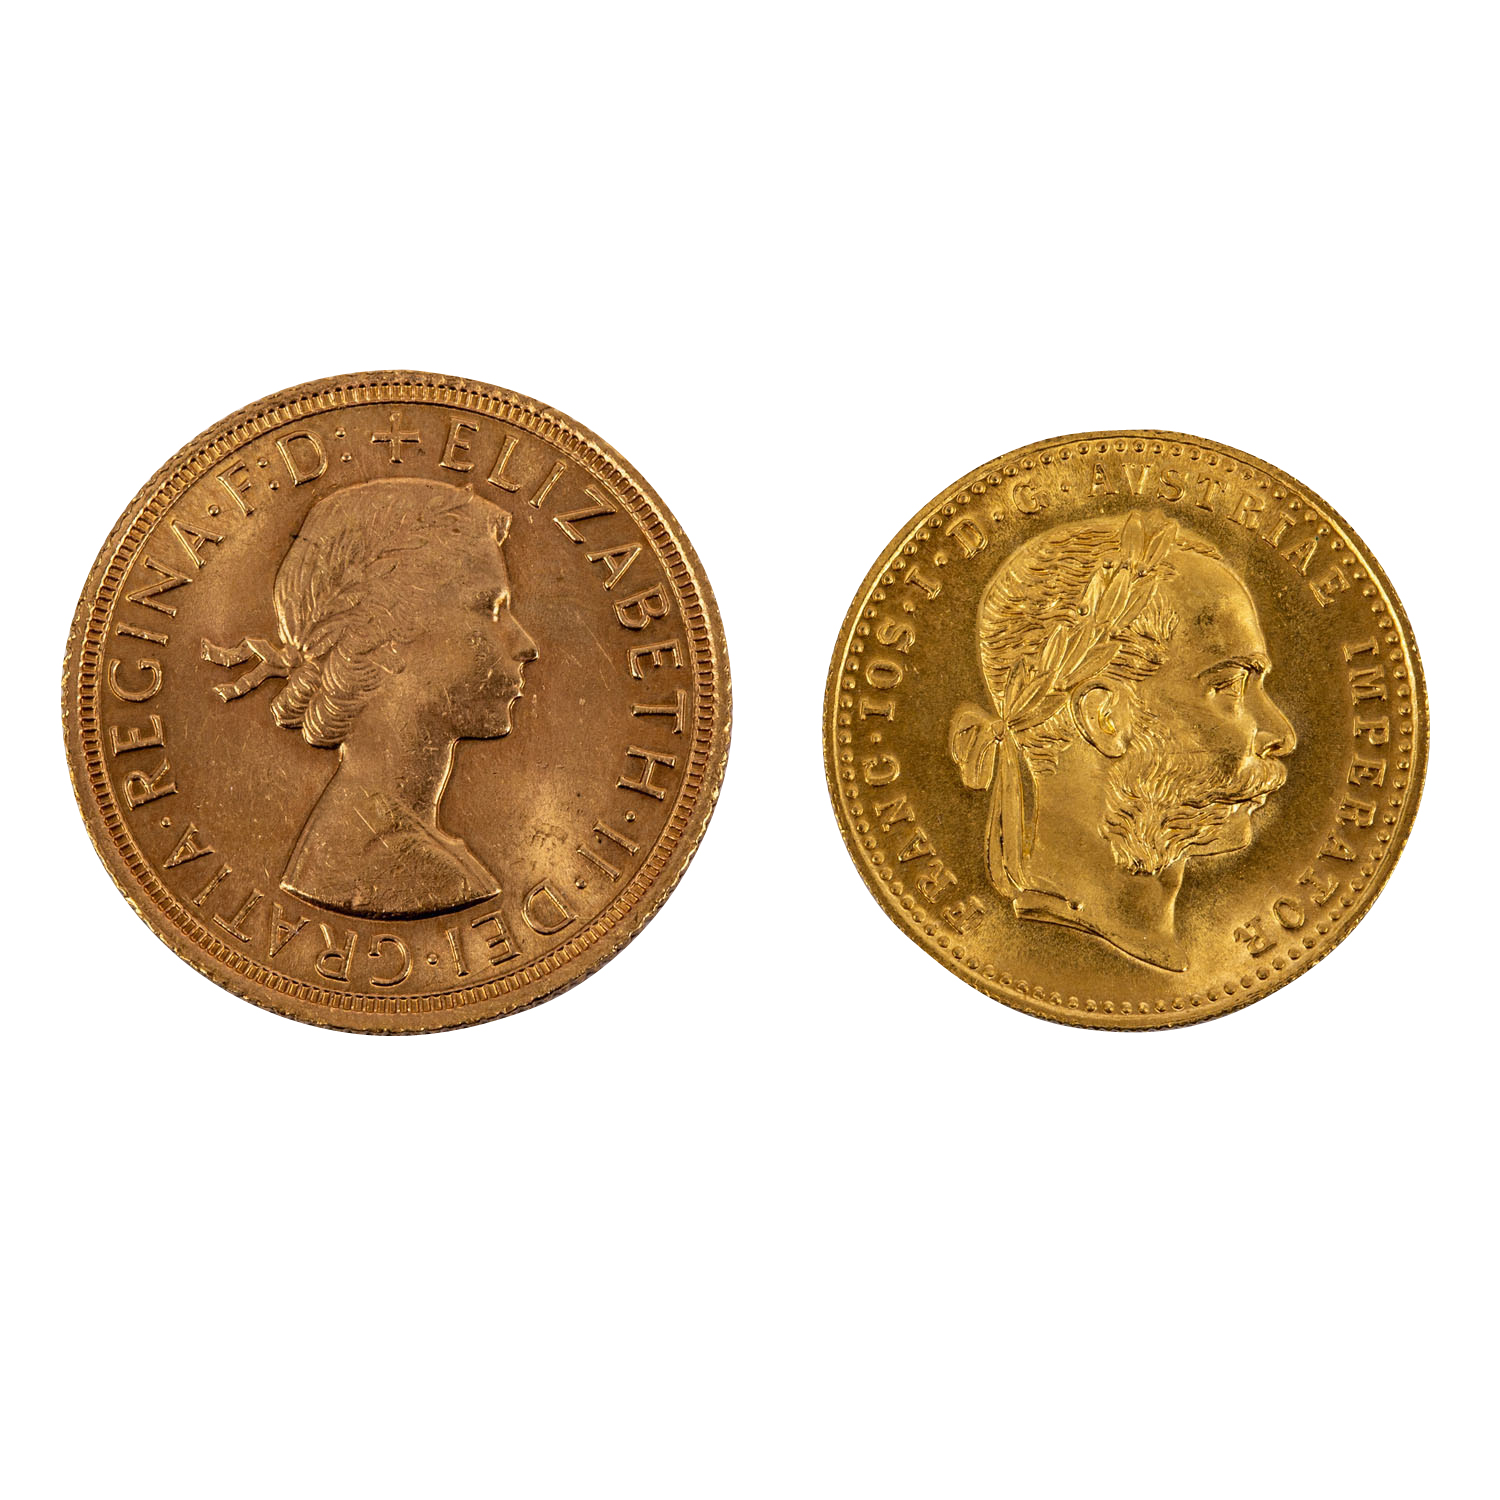 2 GOLDMÜNZEN - GB 1 Sovereign 1964 Elisabeth Schleife und Österreich 1 Dukat 1915 NP. Ca. 10,7 g